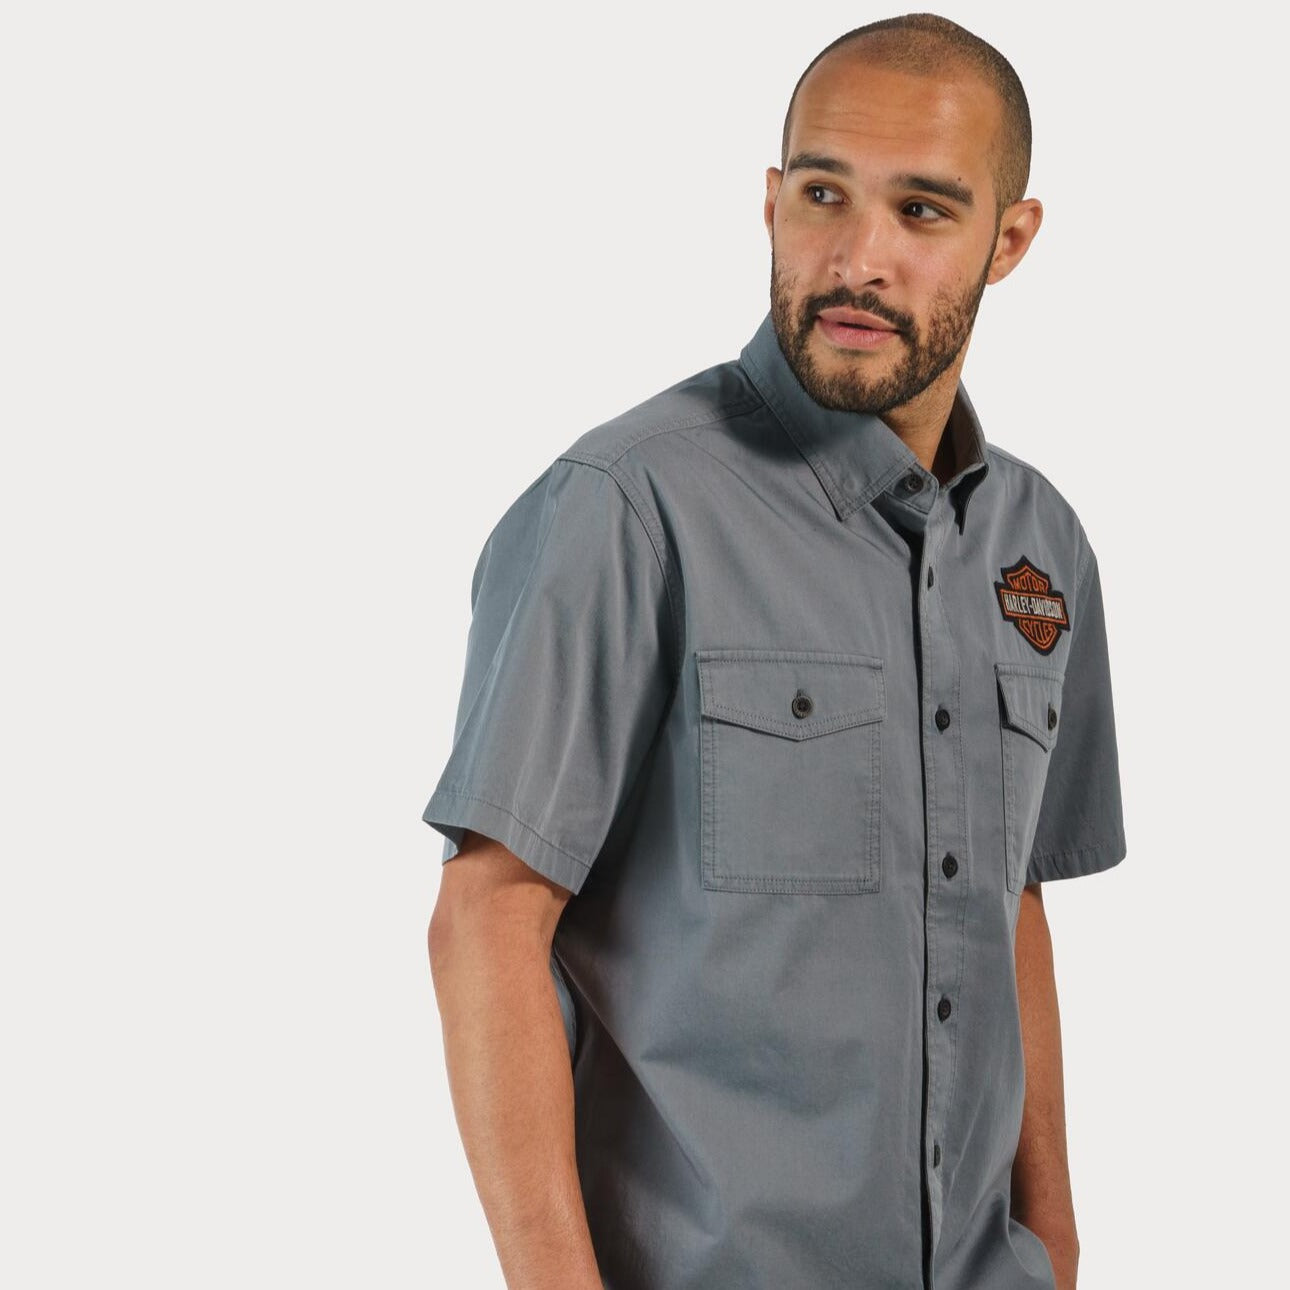 Harley-Davidson Men's Bar & Shield Short Sleeve Shirt, Blue (lifestyle)